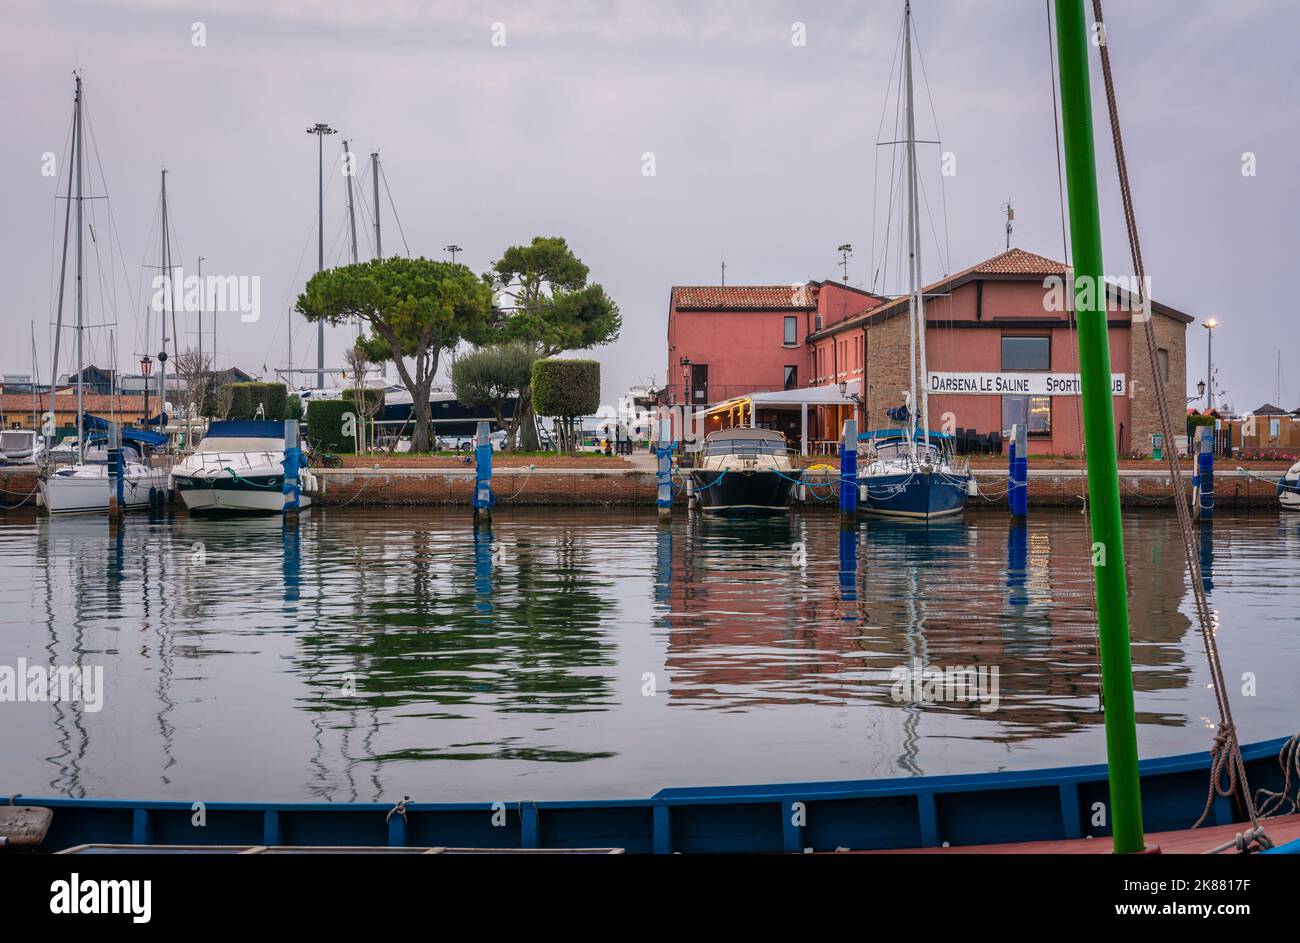 Sporting club Darsena le Saline - porto turistico - Chioggia, laguna veneta, Veneto, Italia settentrionale - Europa Foto Stock